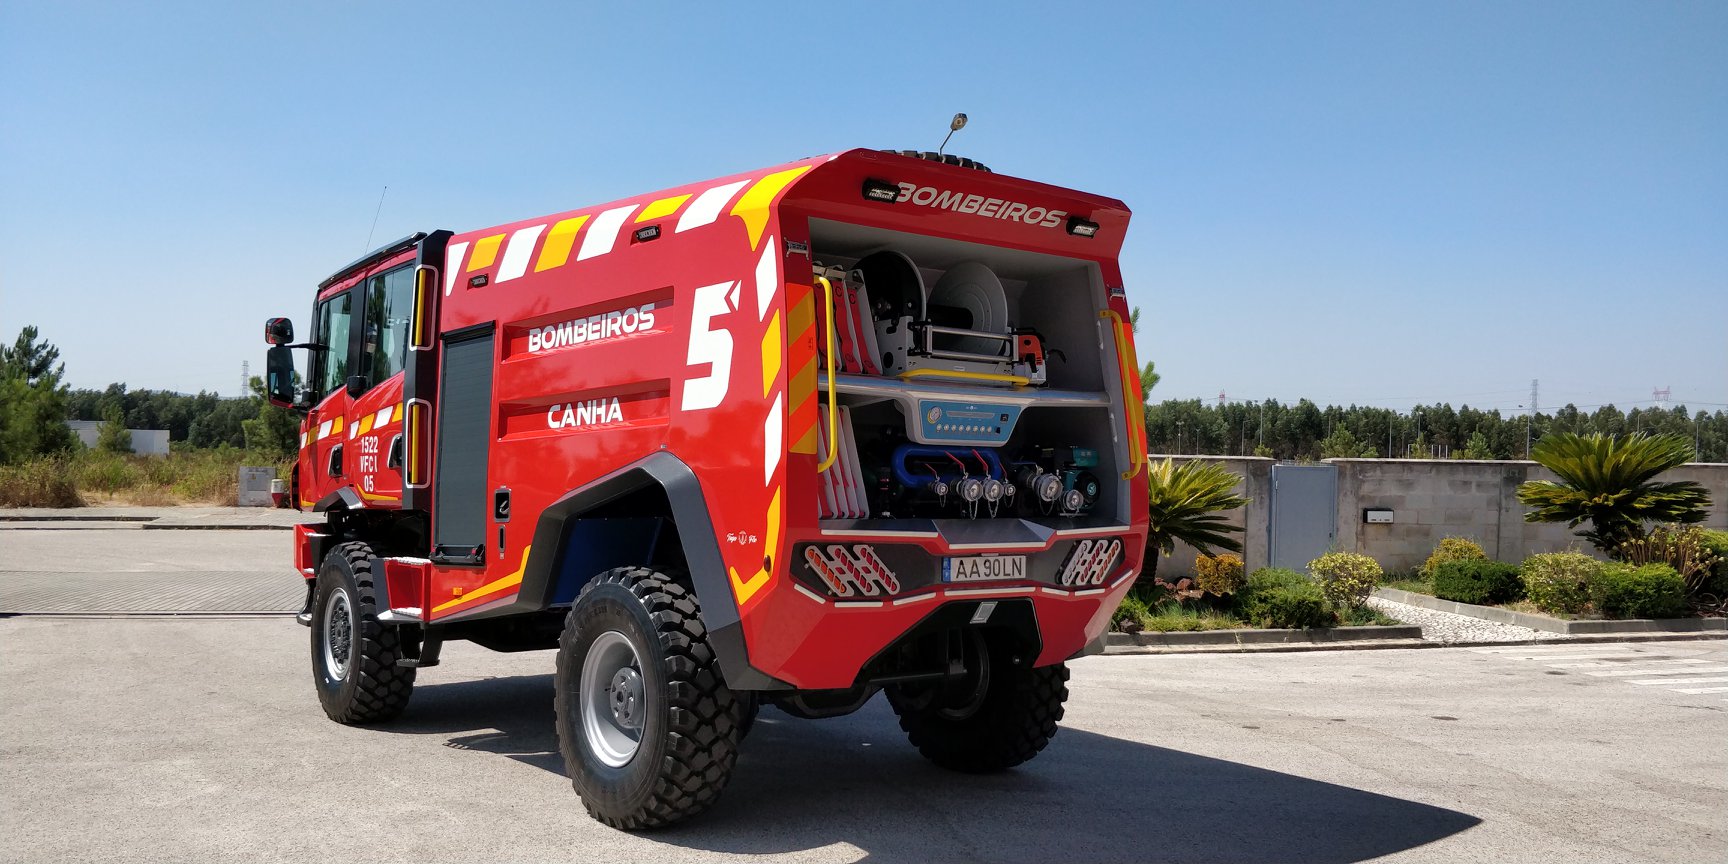 Το πυροσβεστικό όχημα VFCI 05 Scania P360 4X4